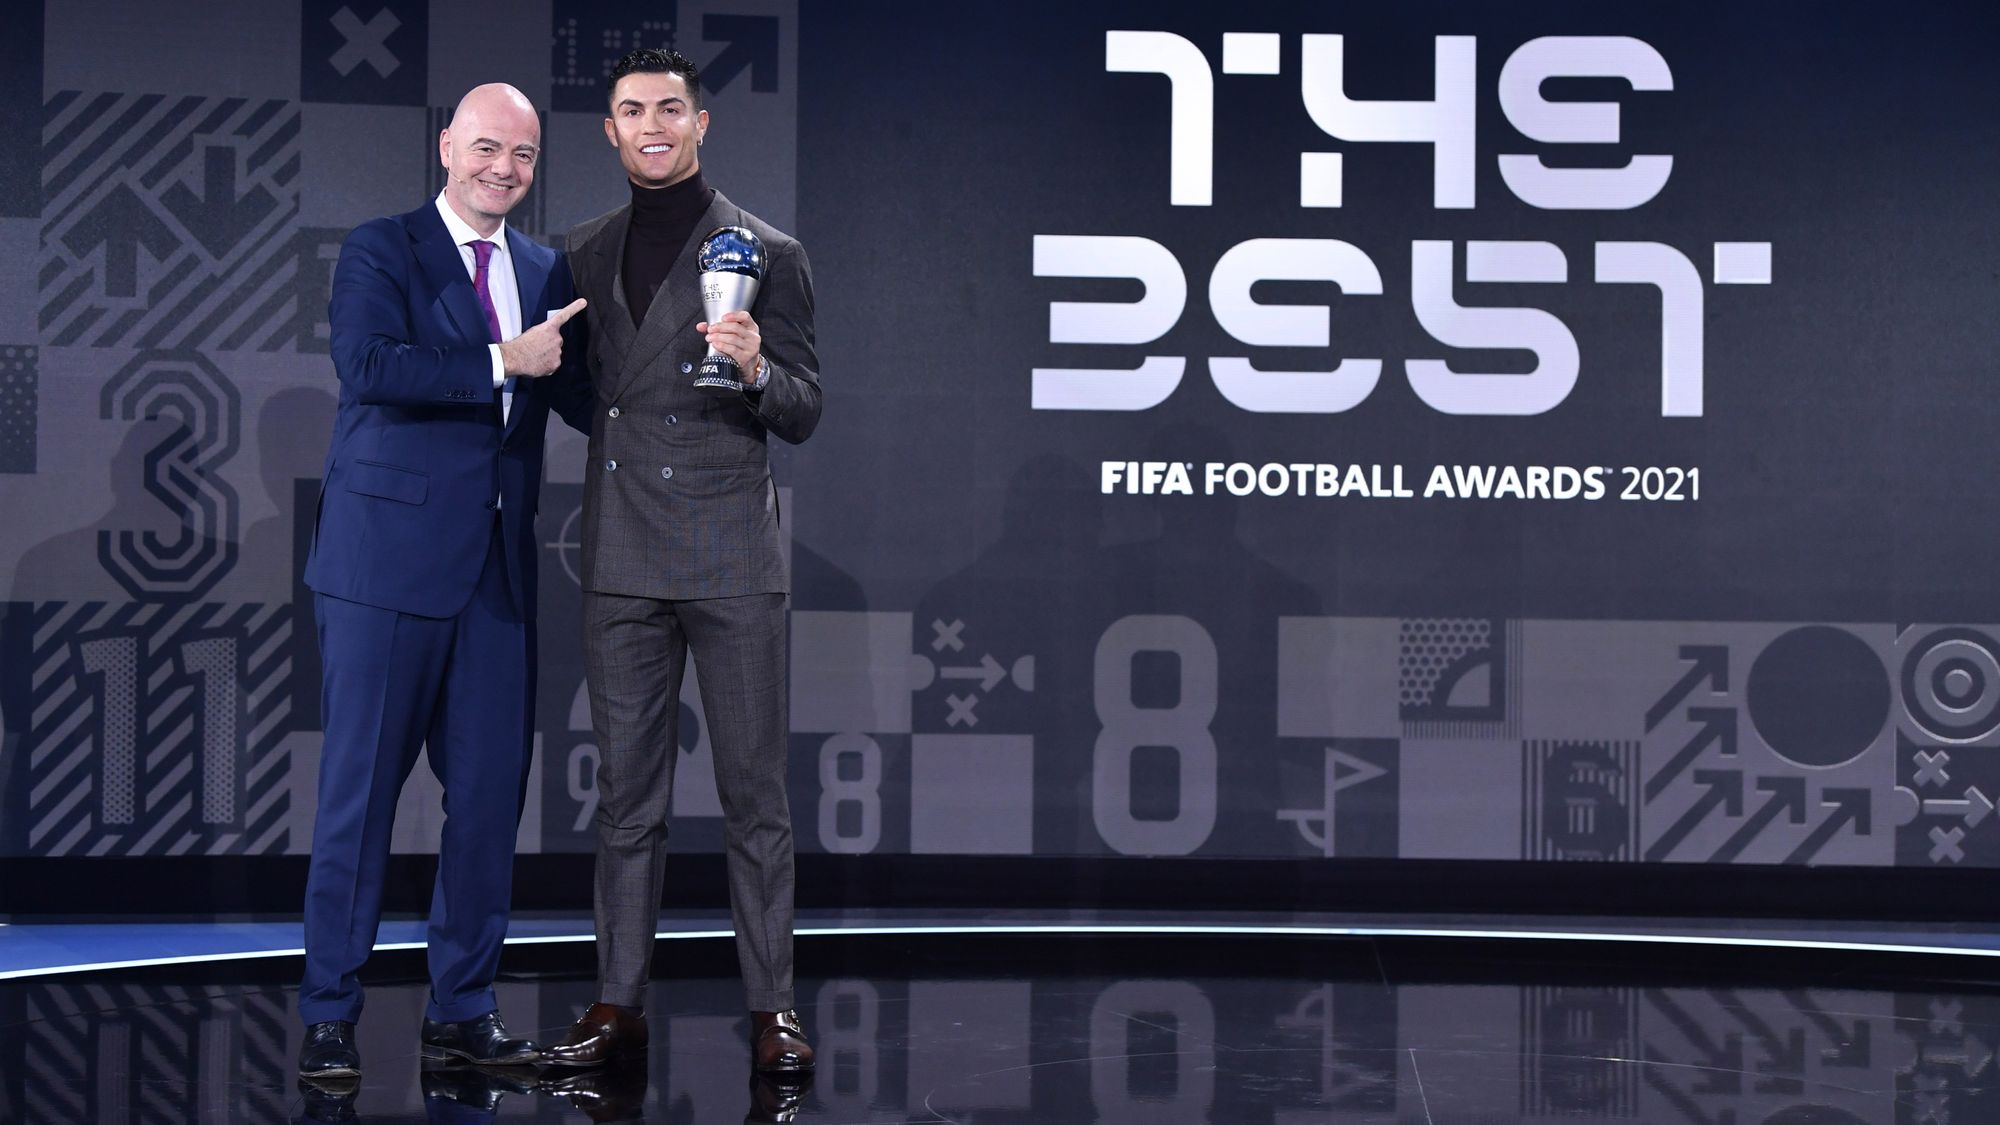 Premio honorífico masculino: Cristiano Ronaldo